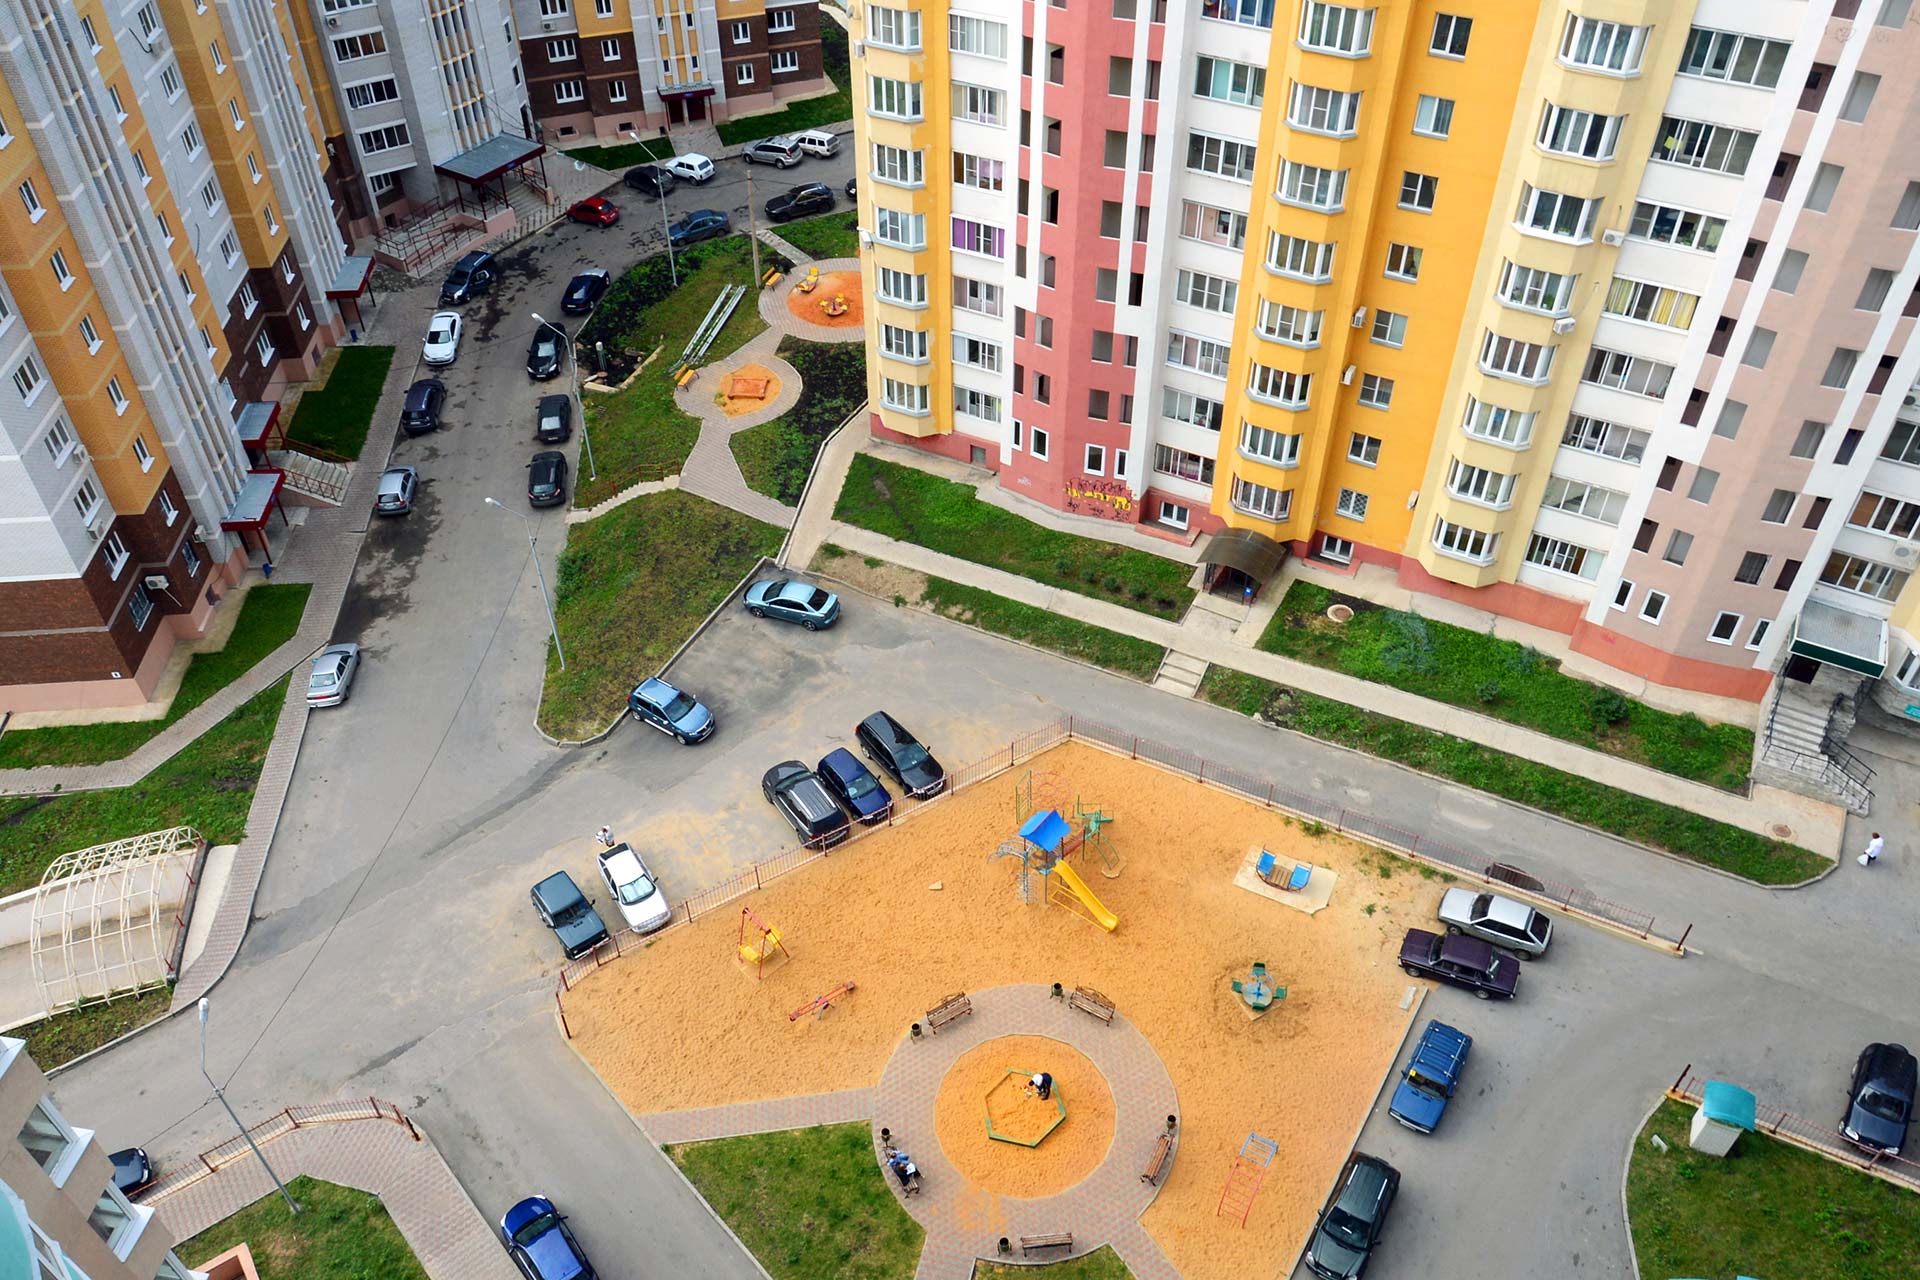 Piazzale condominiale: se costruito con materiali scadenti è possibile agire contro il costruttore